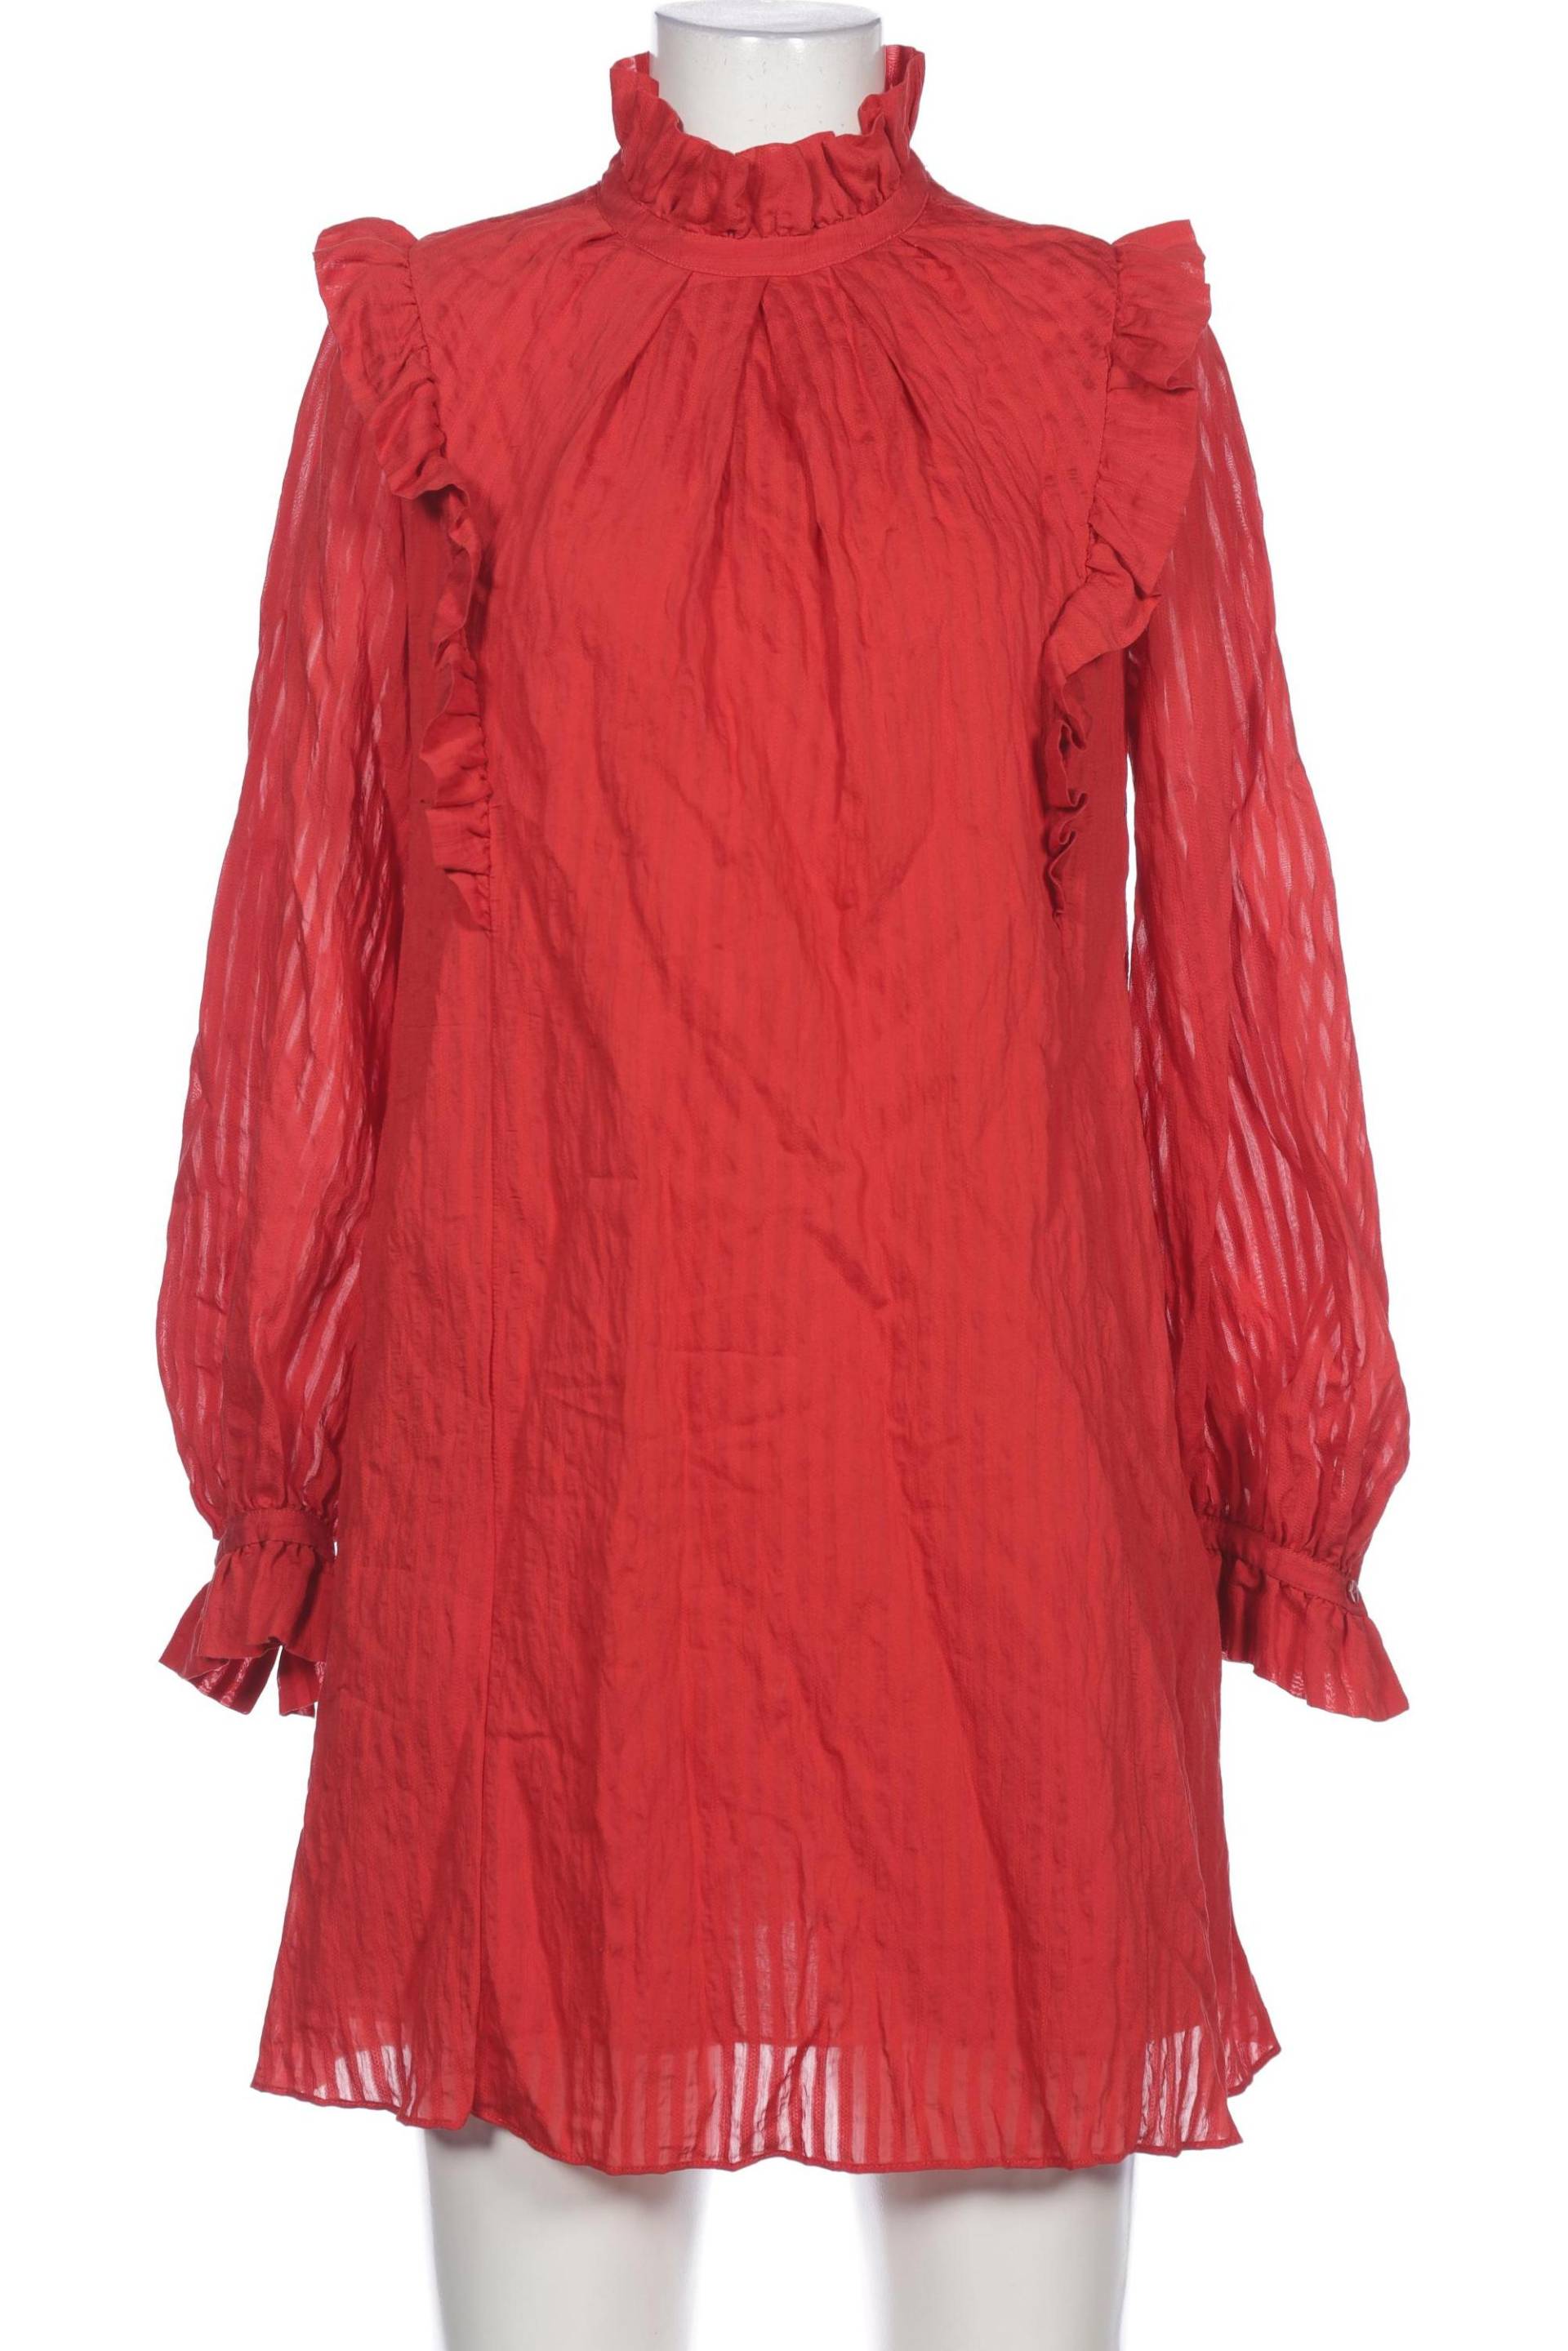 Tara Jarmon Damen Kleid, rot von Tara Jarmon